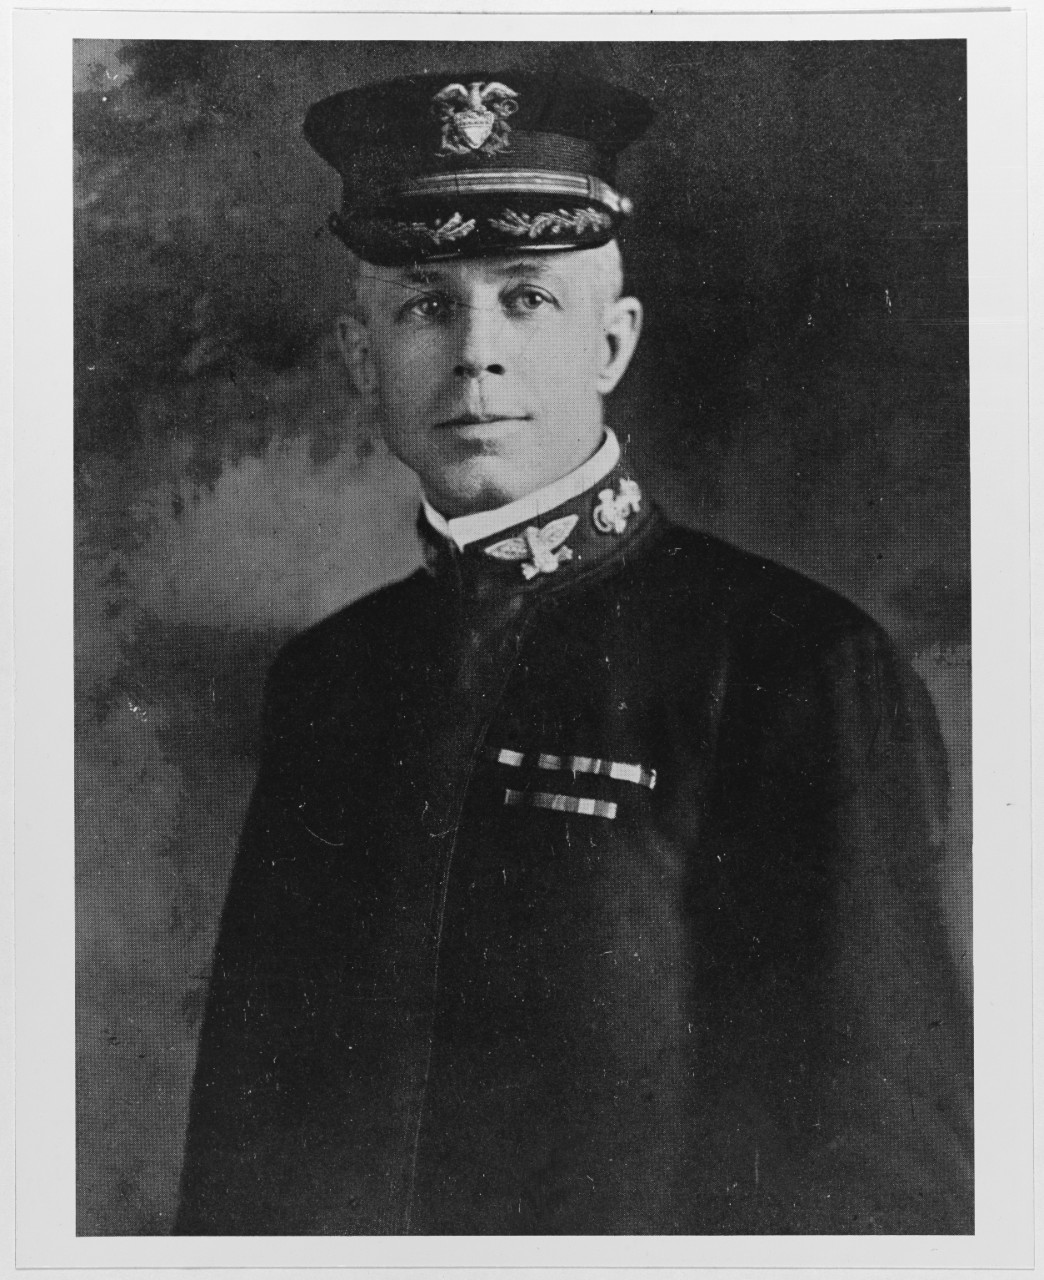 Captain Harry E. Yarnell, USN